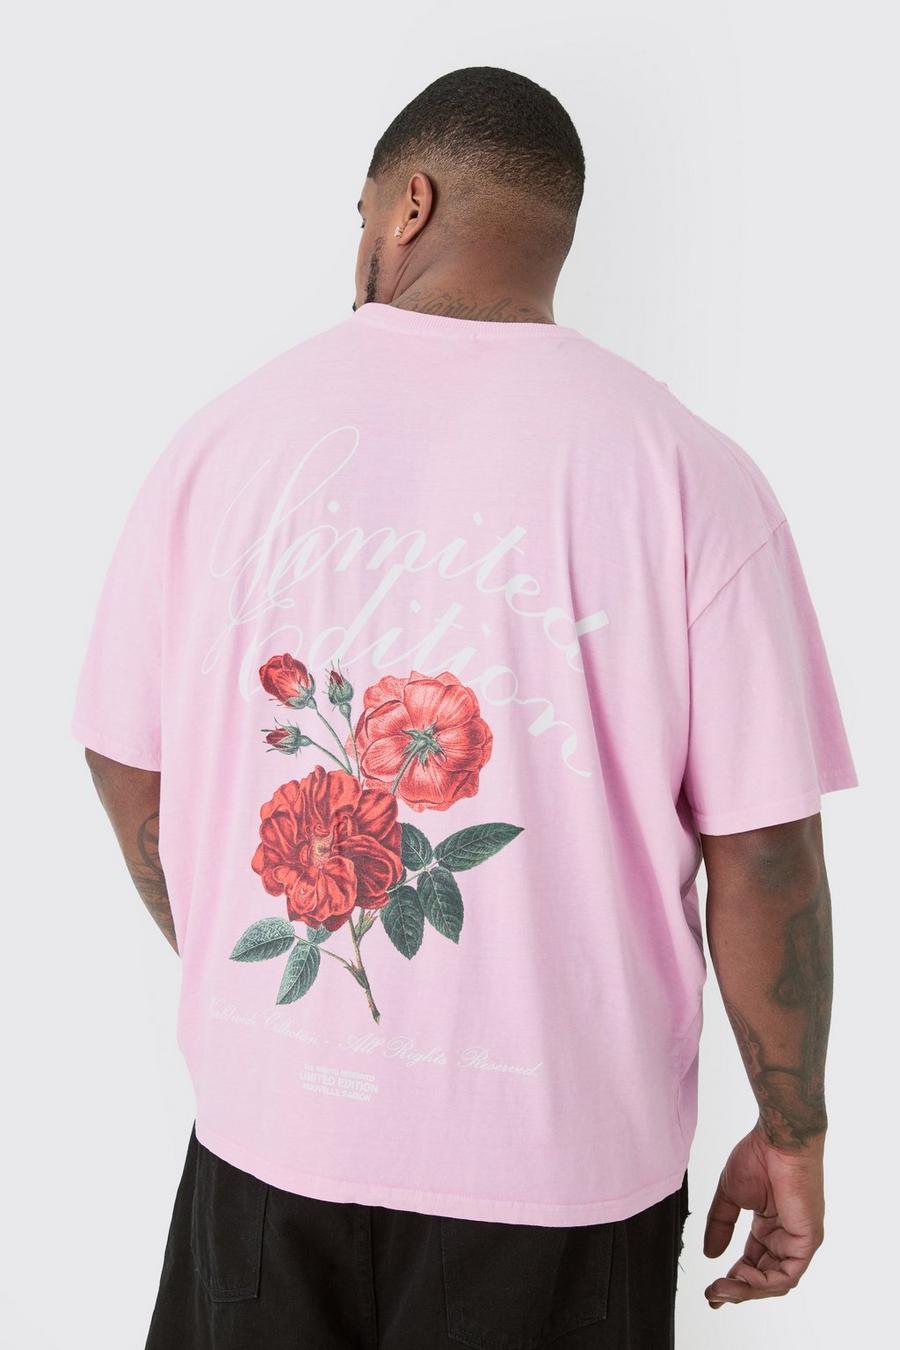 Camiseta Plus rosa con estampado gráfico de flores Lmtd Edition, Pink